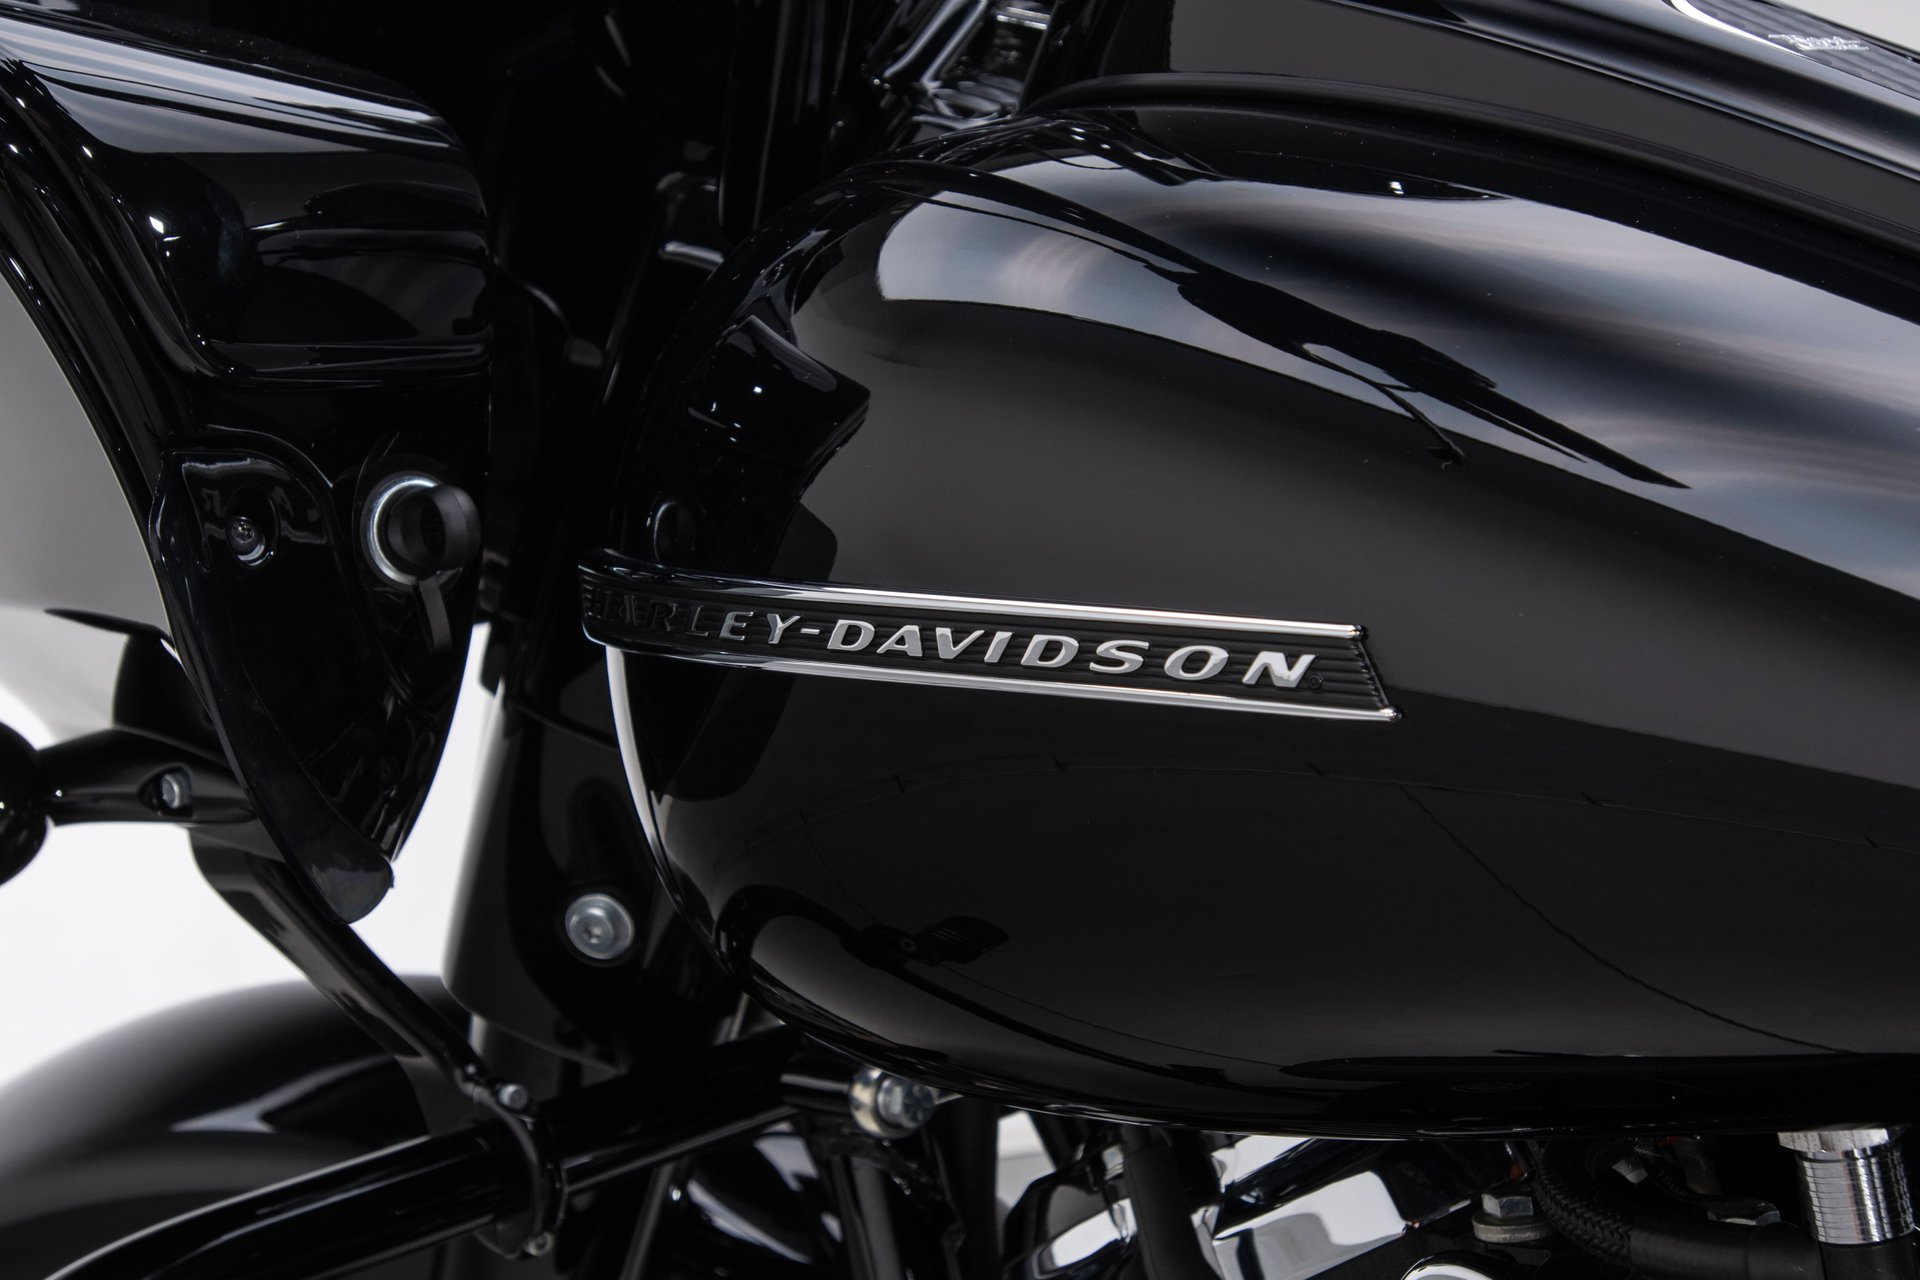 For Sale 2019 Harley Davidson Road Glide